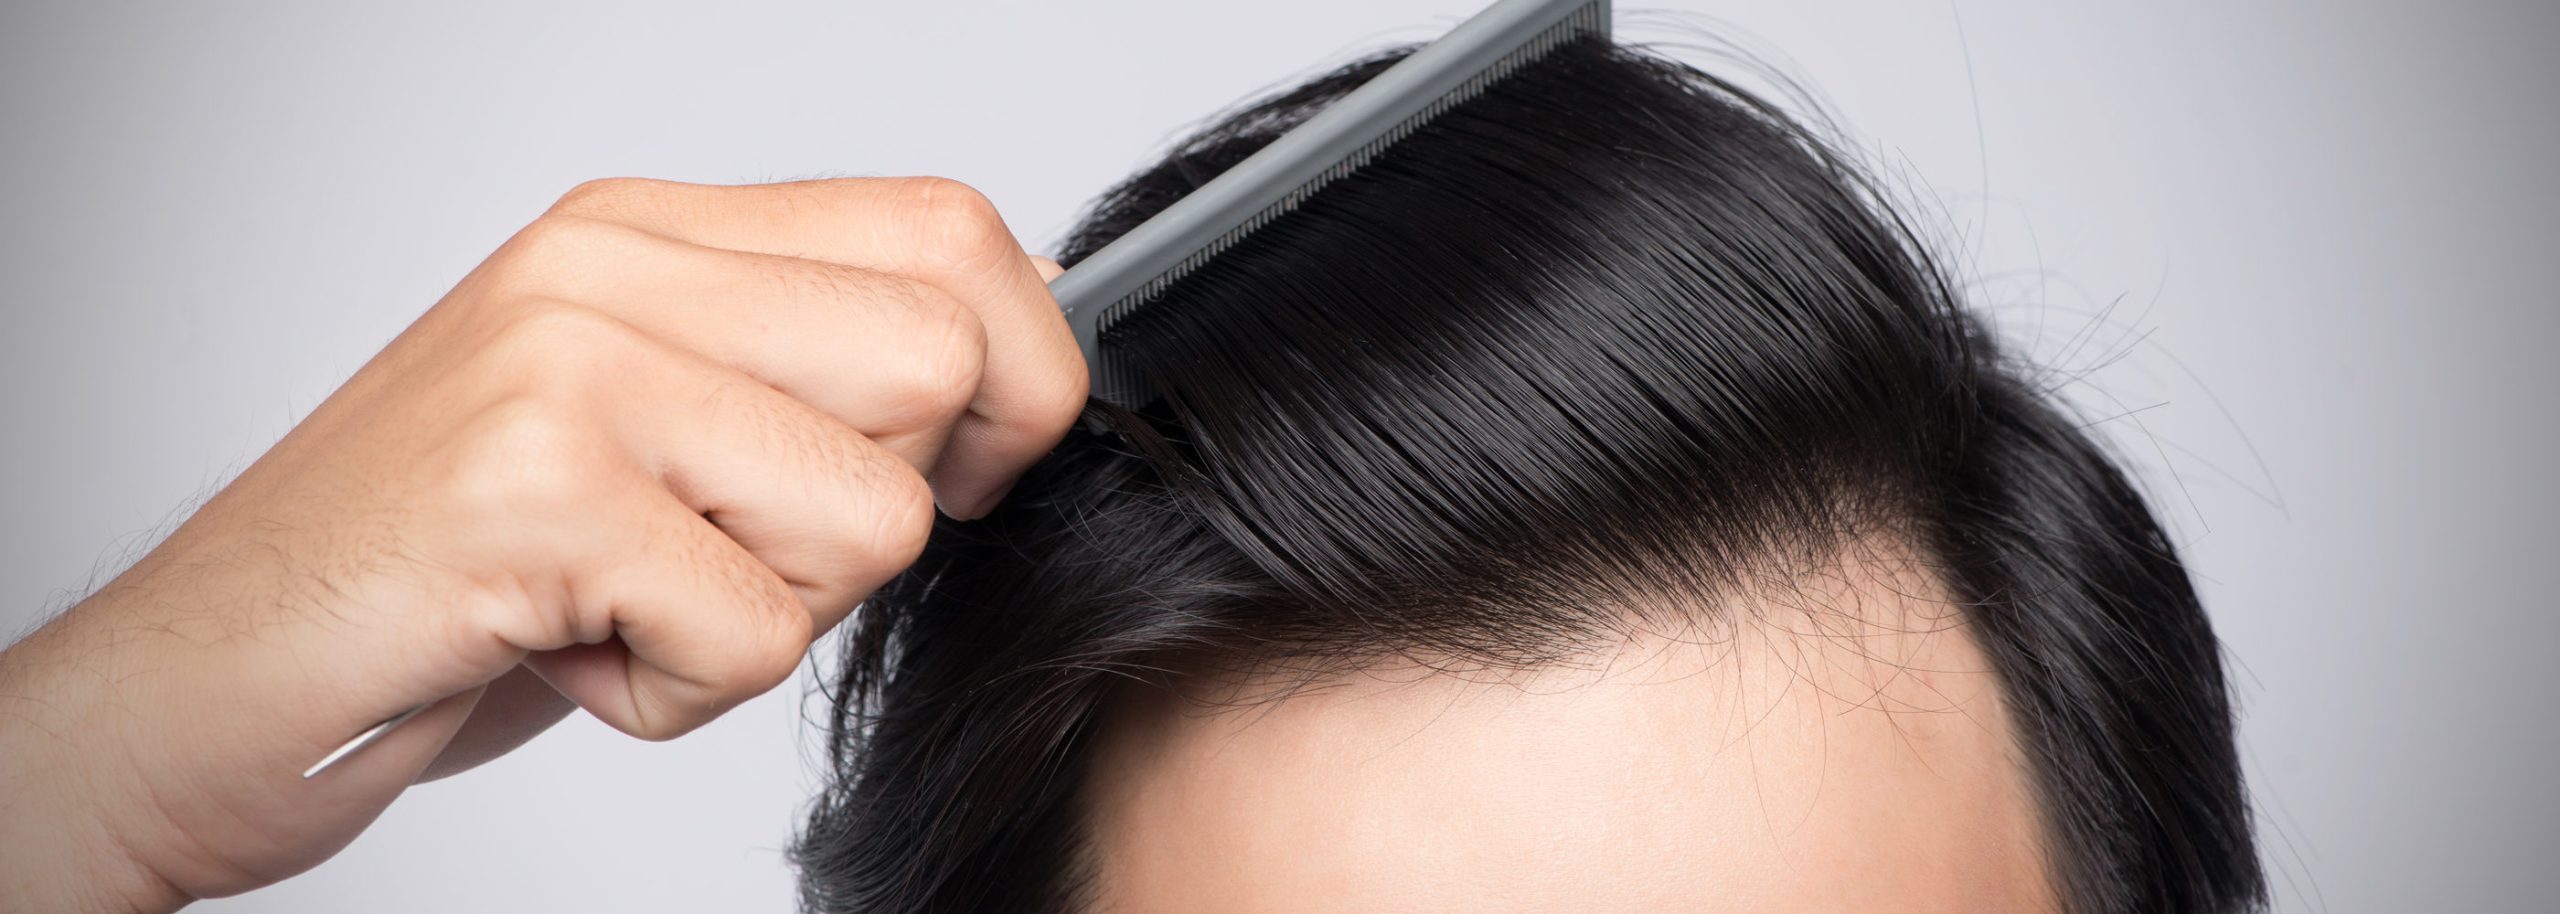 Αραίωση στα μαλλιά- Πότε είναι σημάδι για κάτι σοβαρό